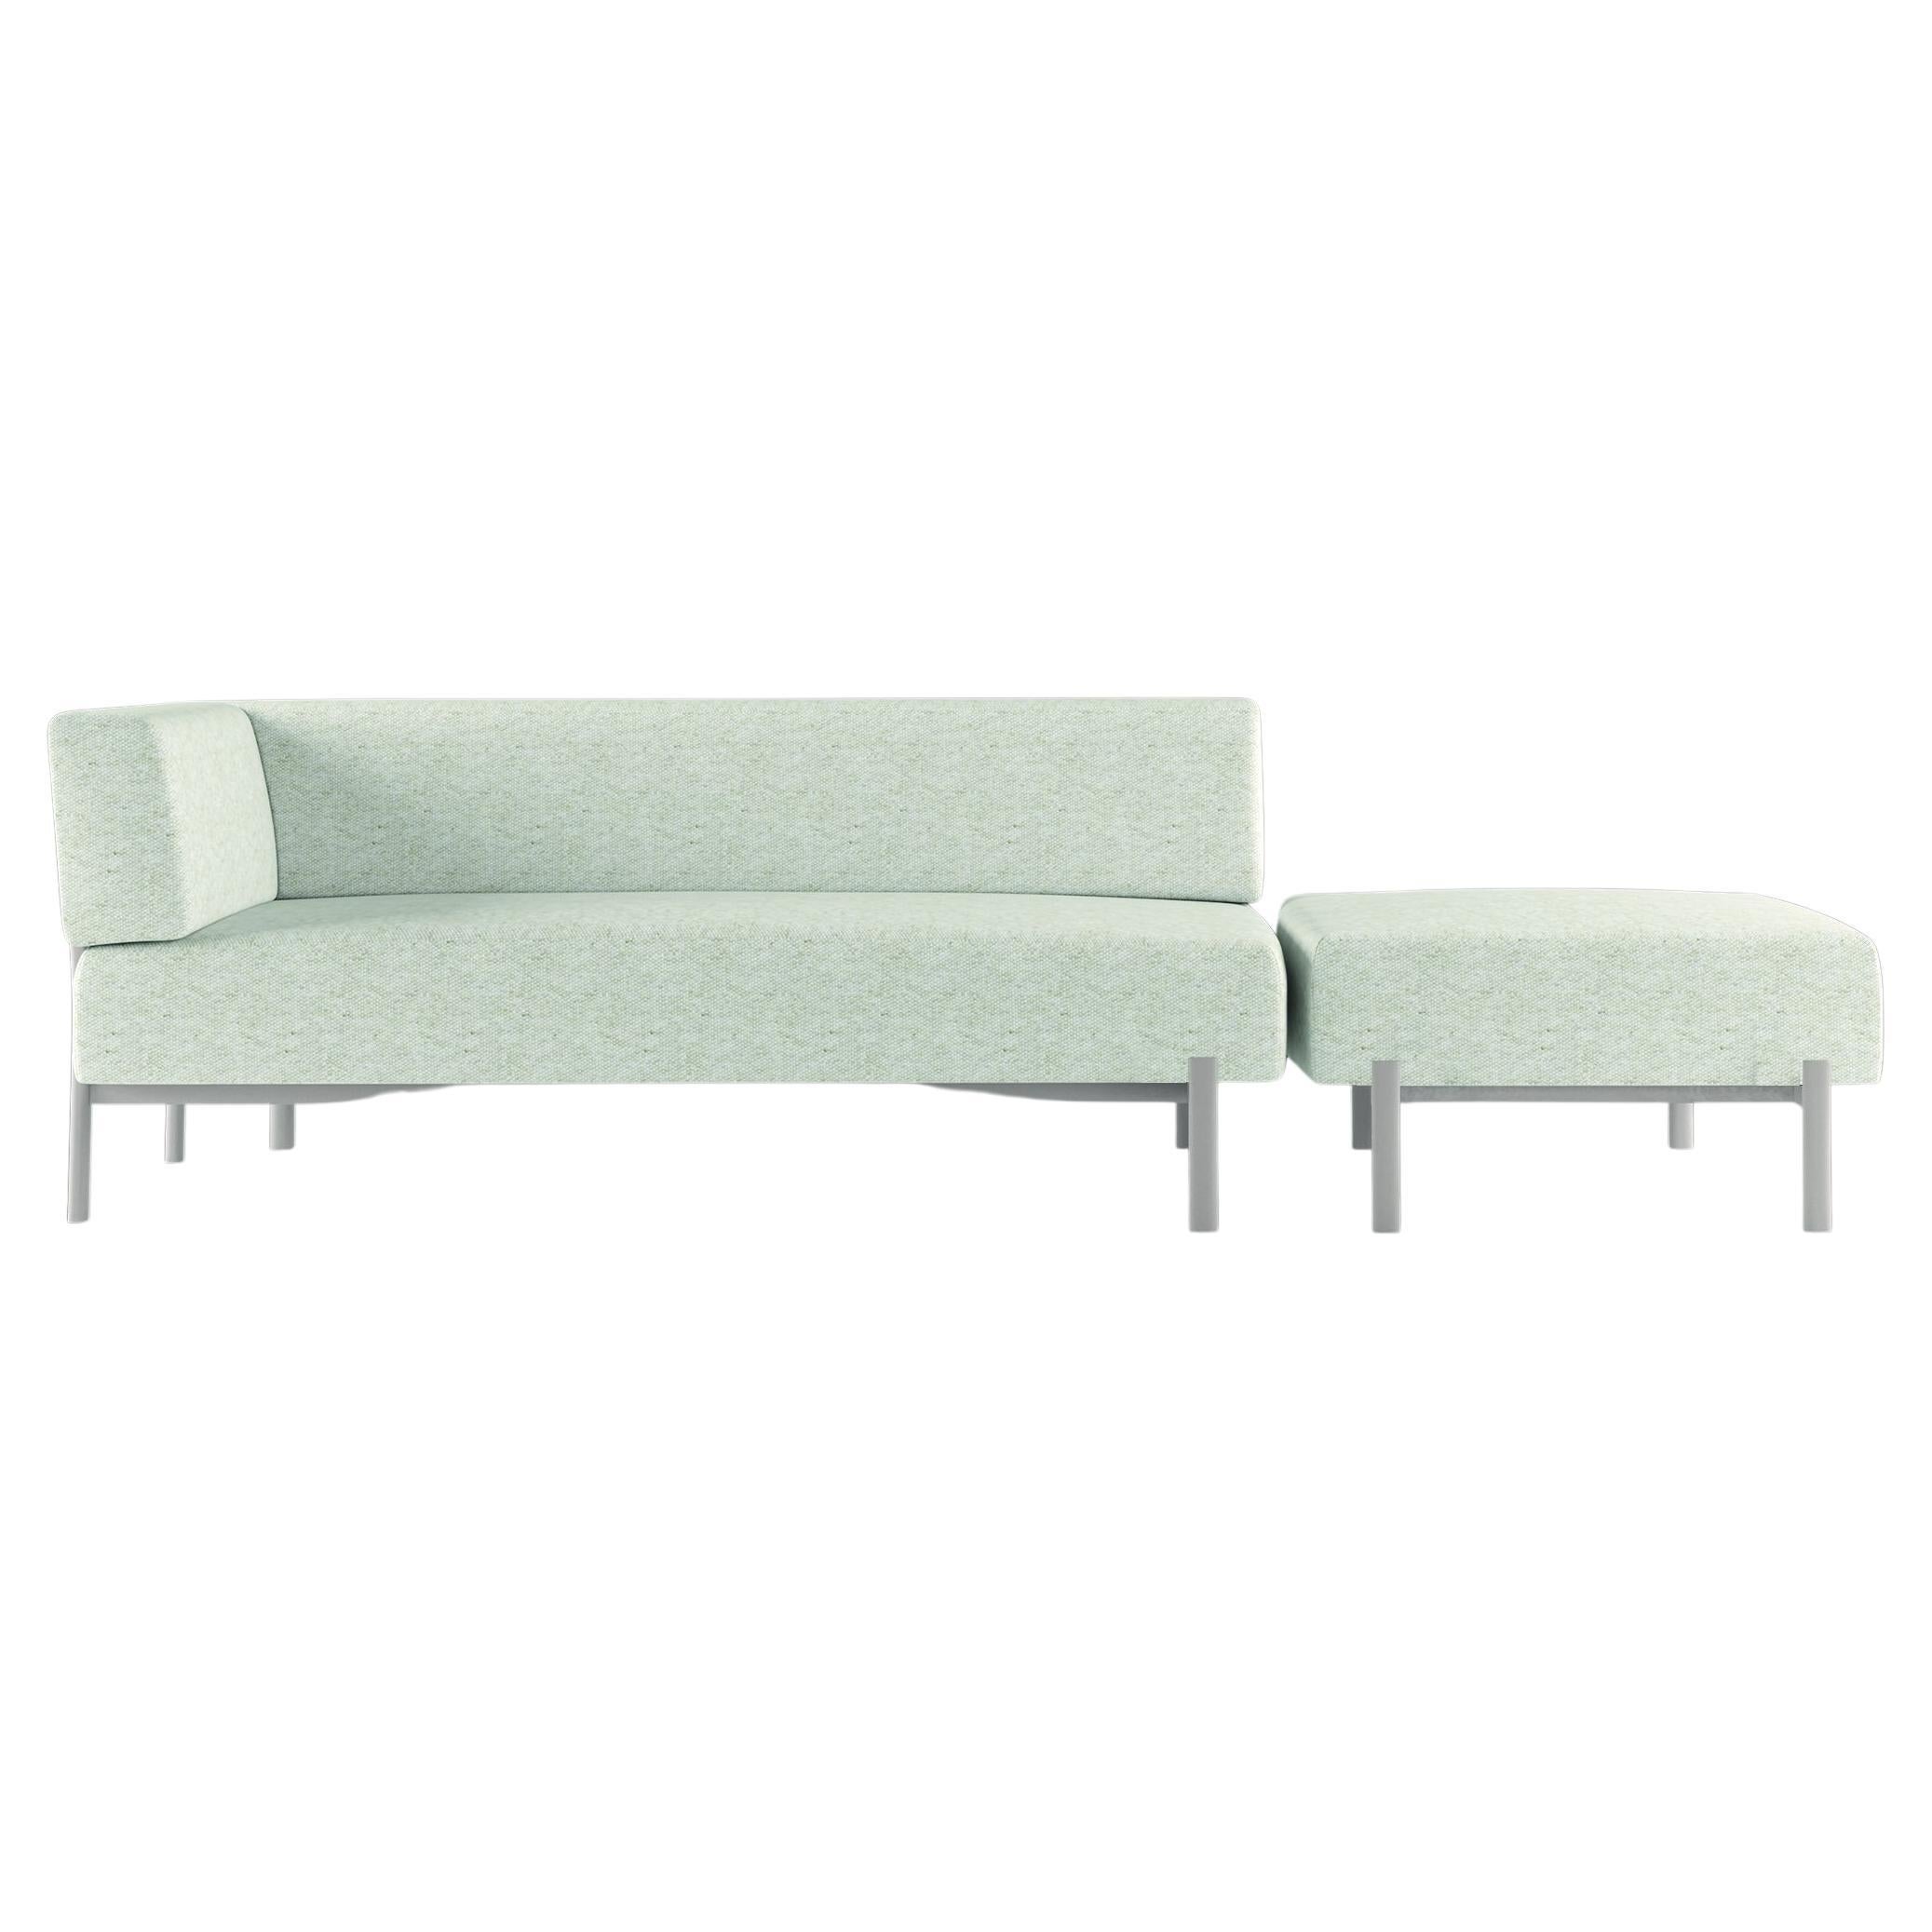 Alias T05+T07 Zehn-Sofa und Hocker für den Außenbereich in Weiß mit sandlackiertem Rahmen